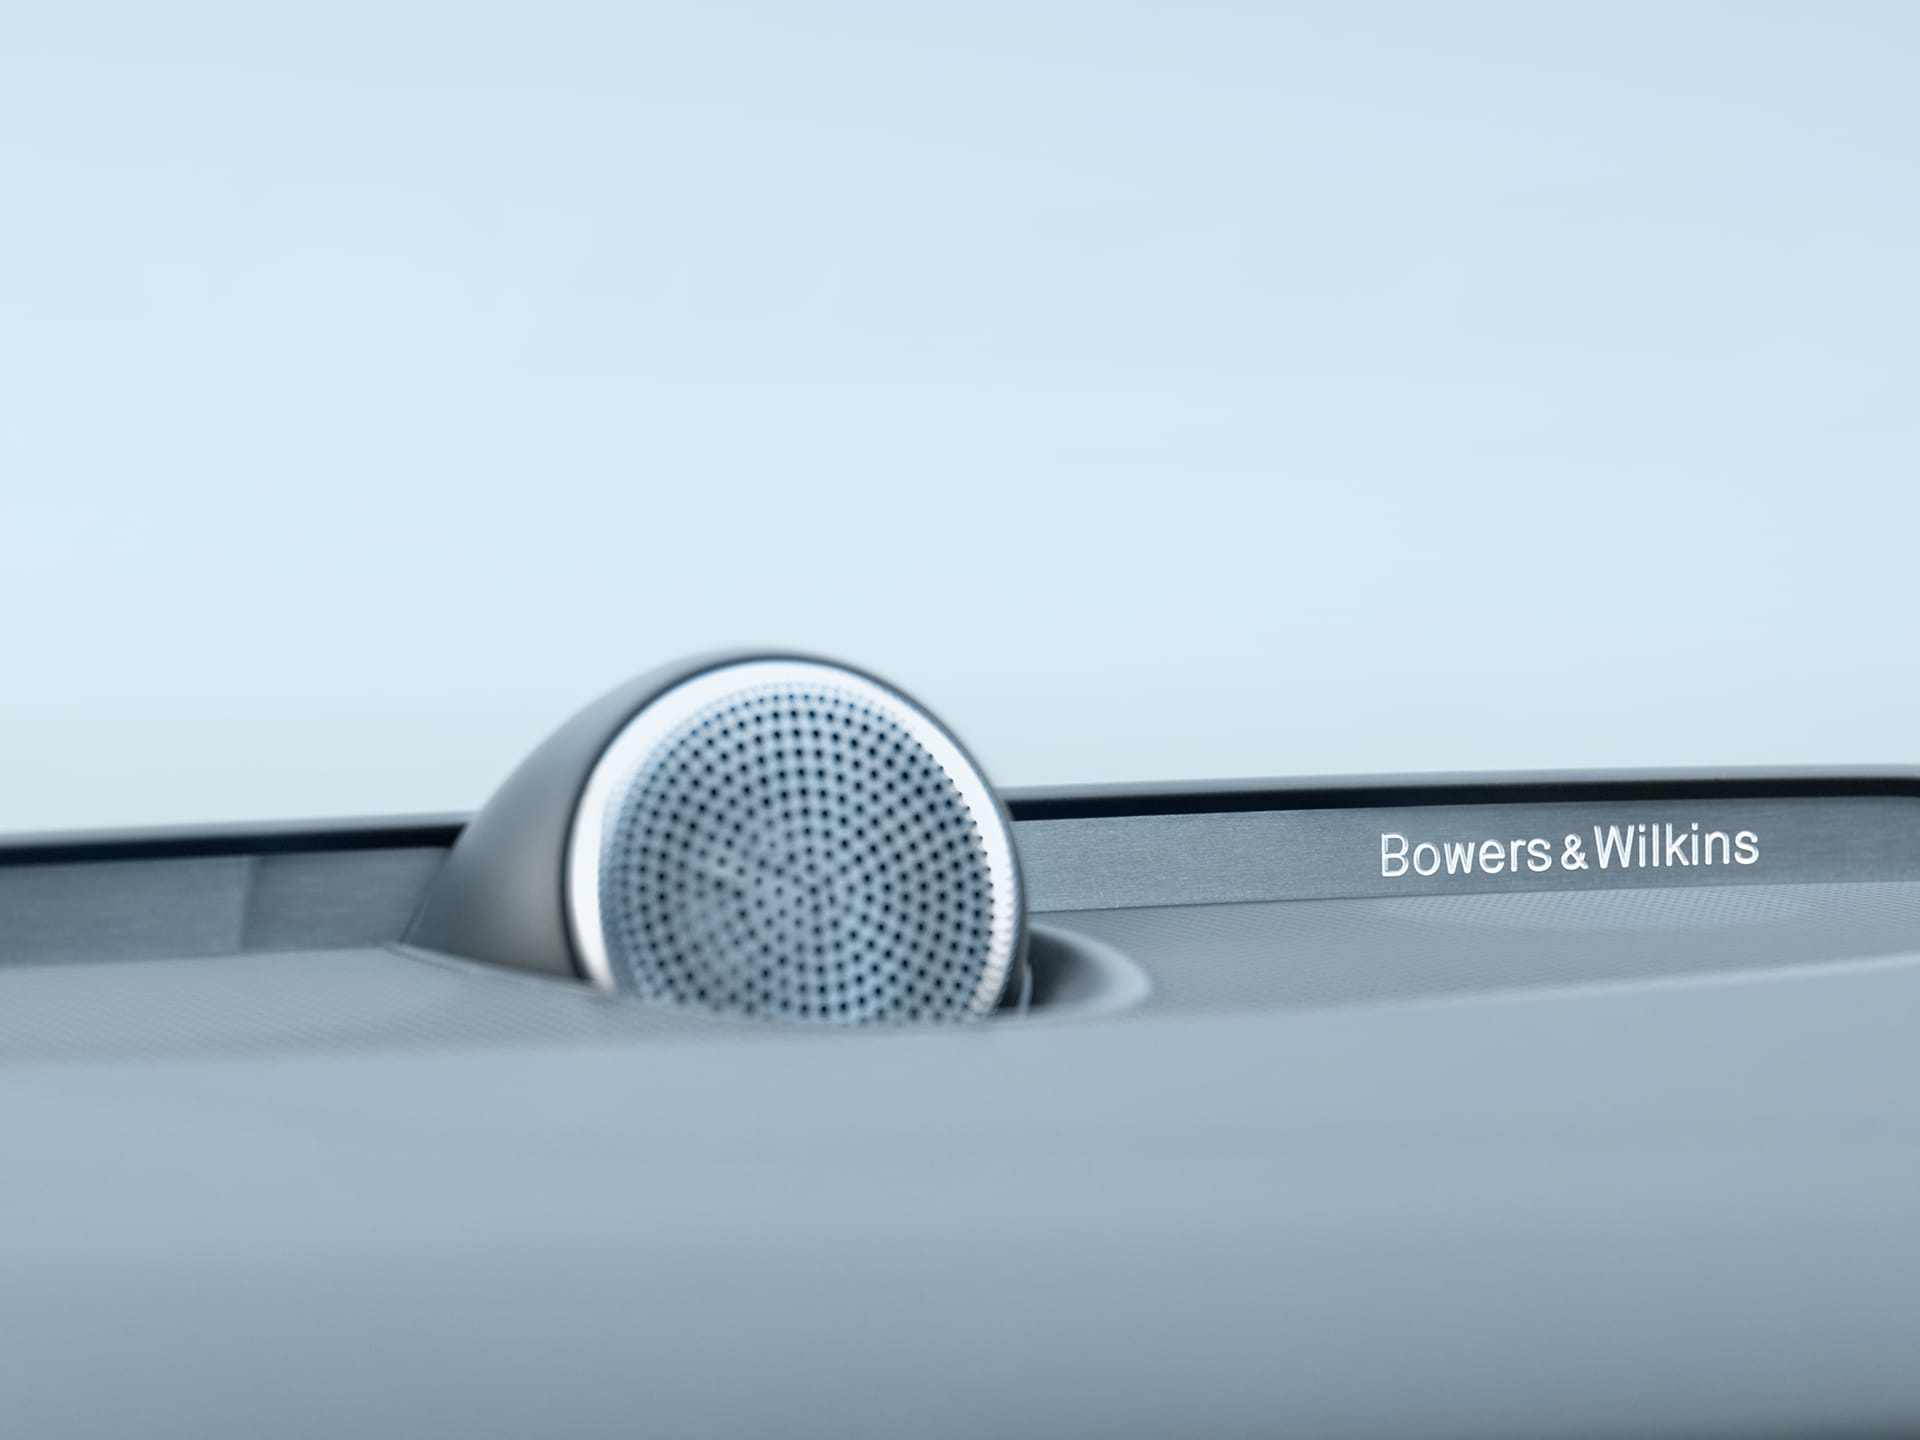 Enceintes Bowers & Wilkins à l'intérieur d'une Volvo S60 hybride rechargeable.